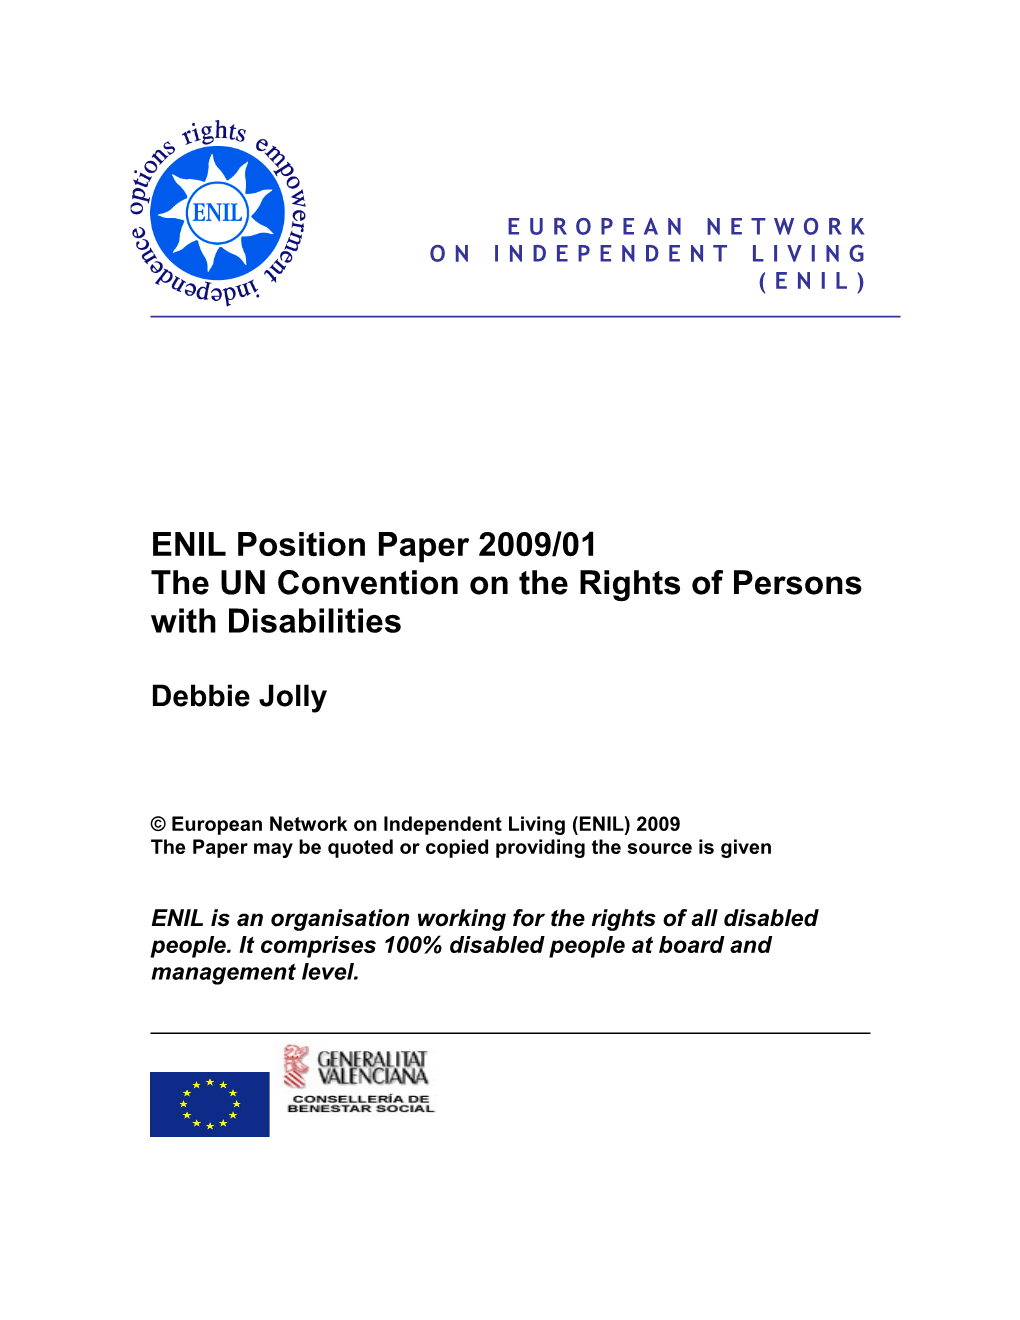 ENIL Position Paper 9